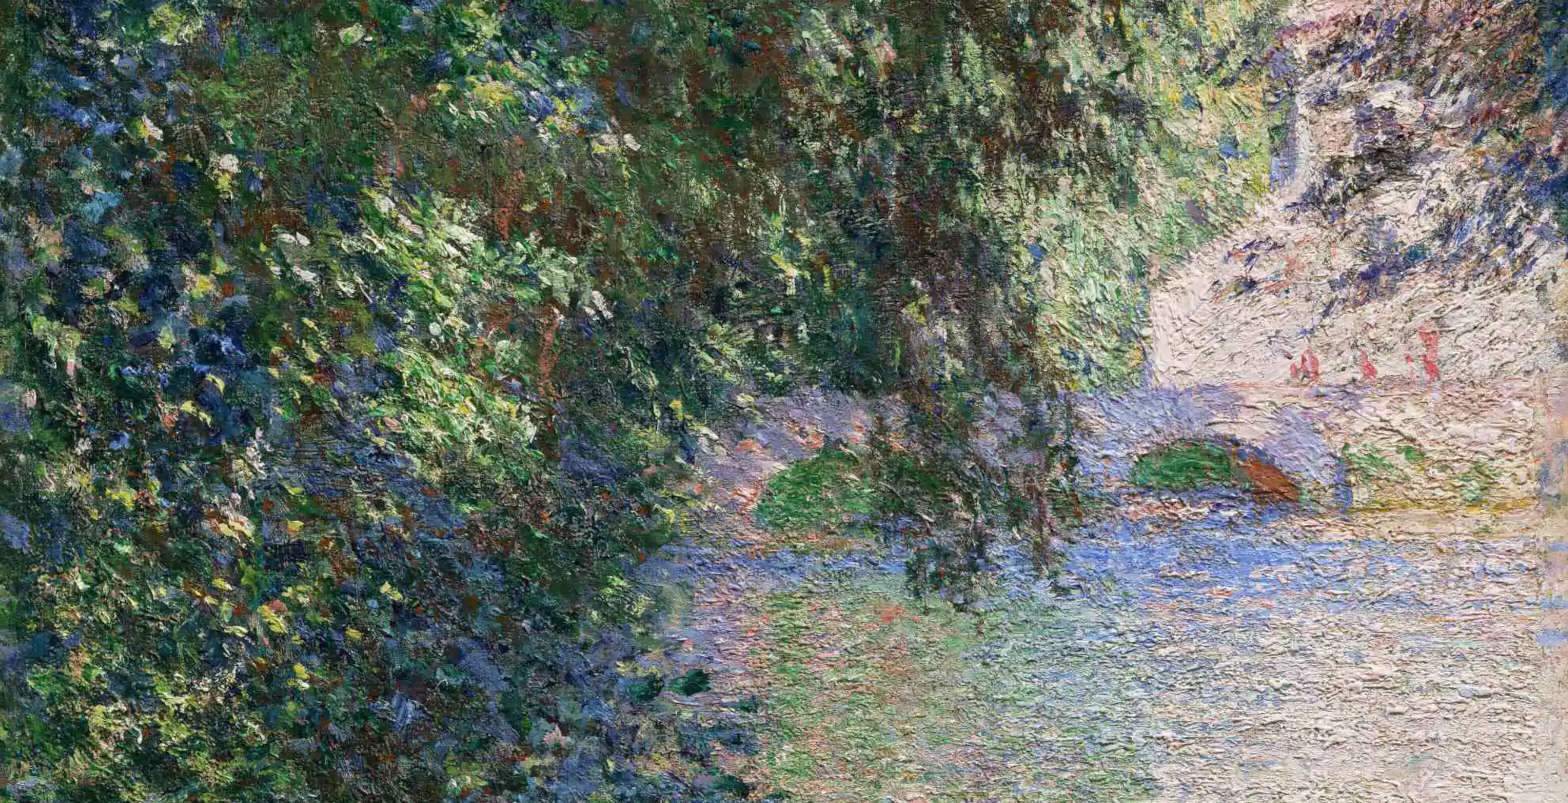 Un museo estadounidense subasta una obra maestra impresionista de Monet. Estimada en 18-25 millones de dólares